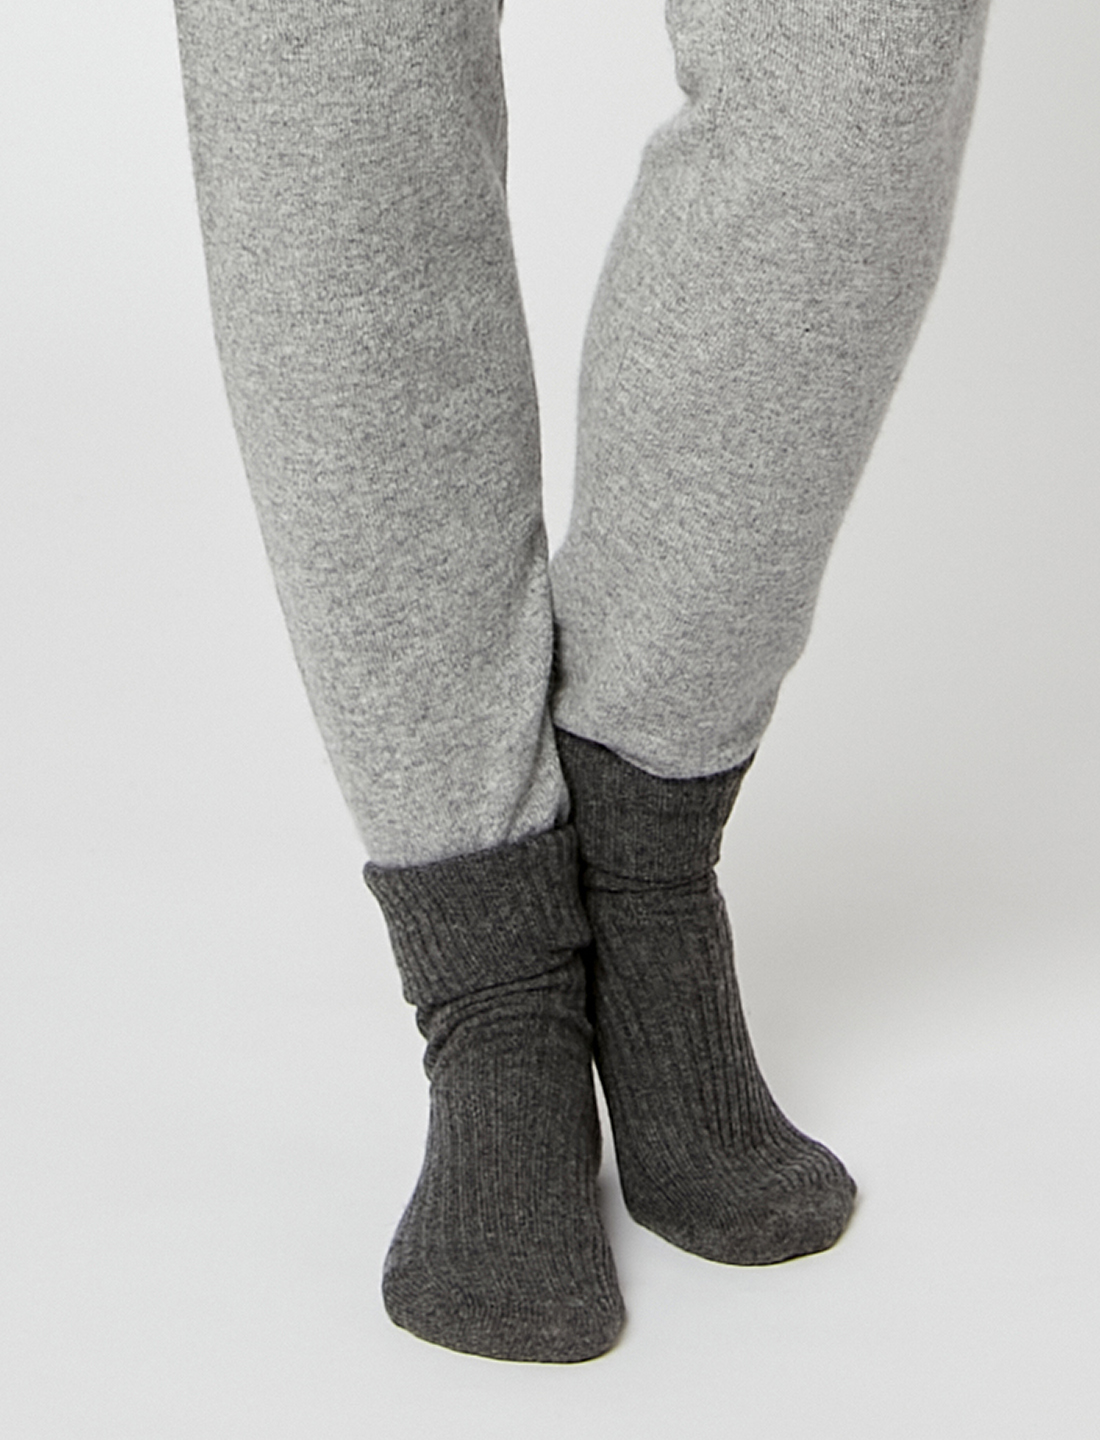 Cashmere socks in slate grey